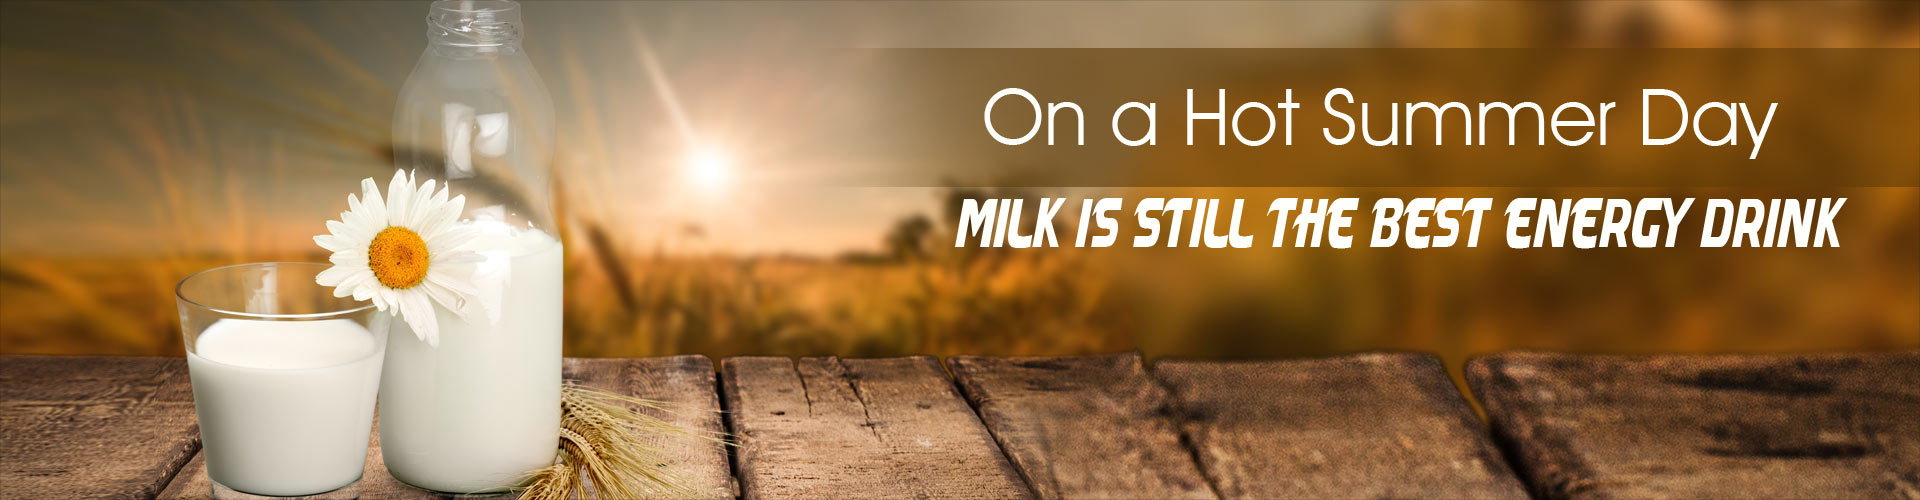 在炎热的夏天,牛奶仍然是最好的能量饮料